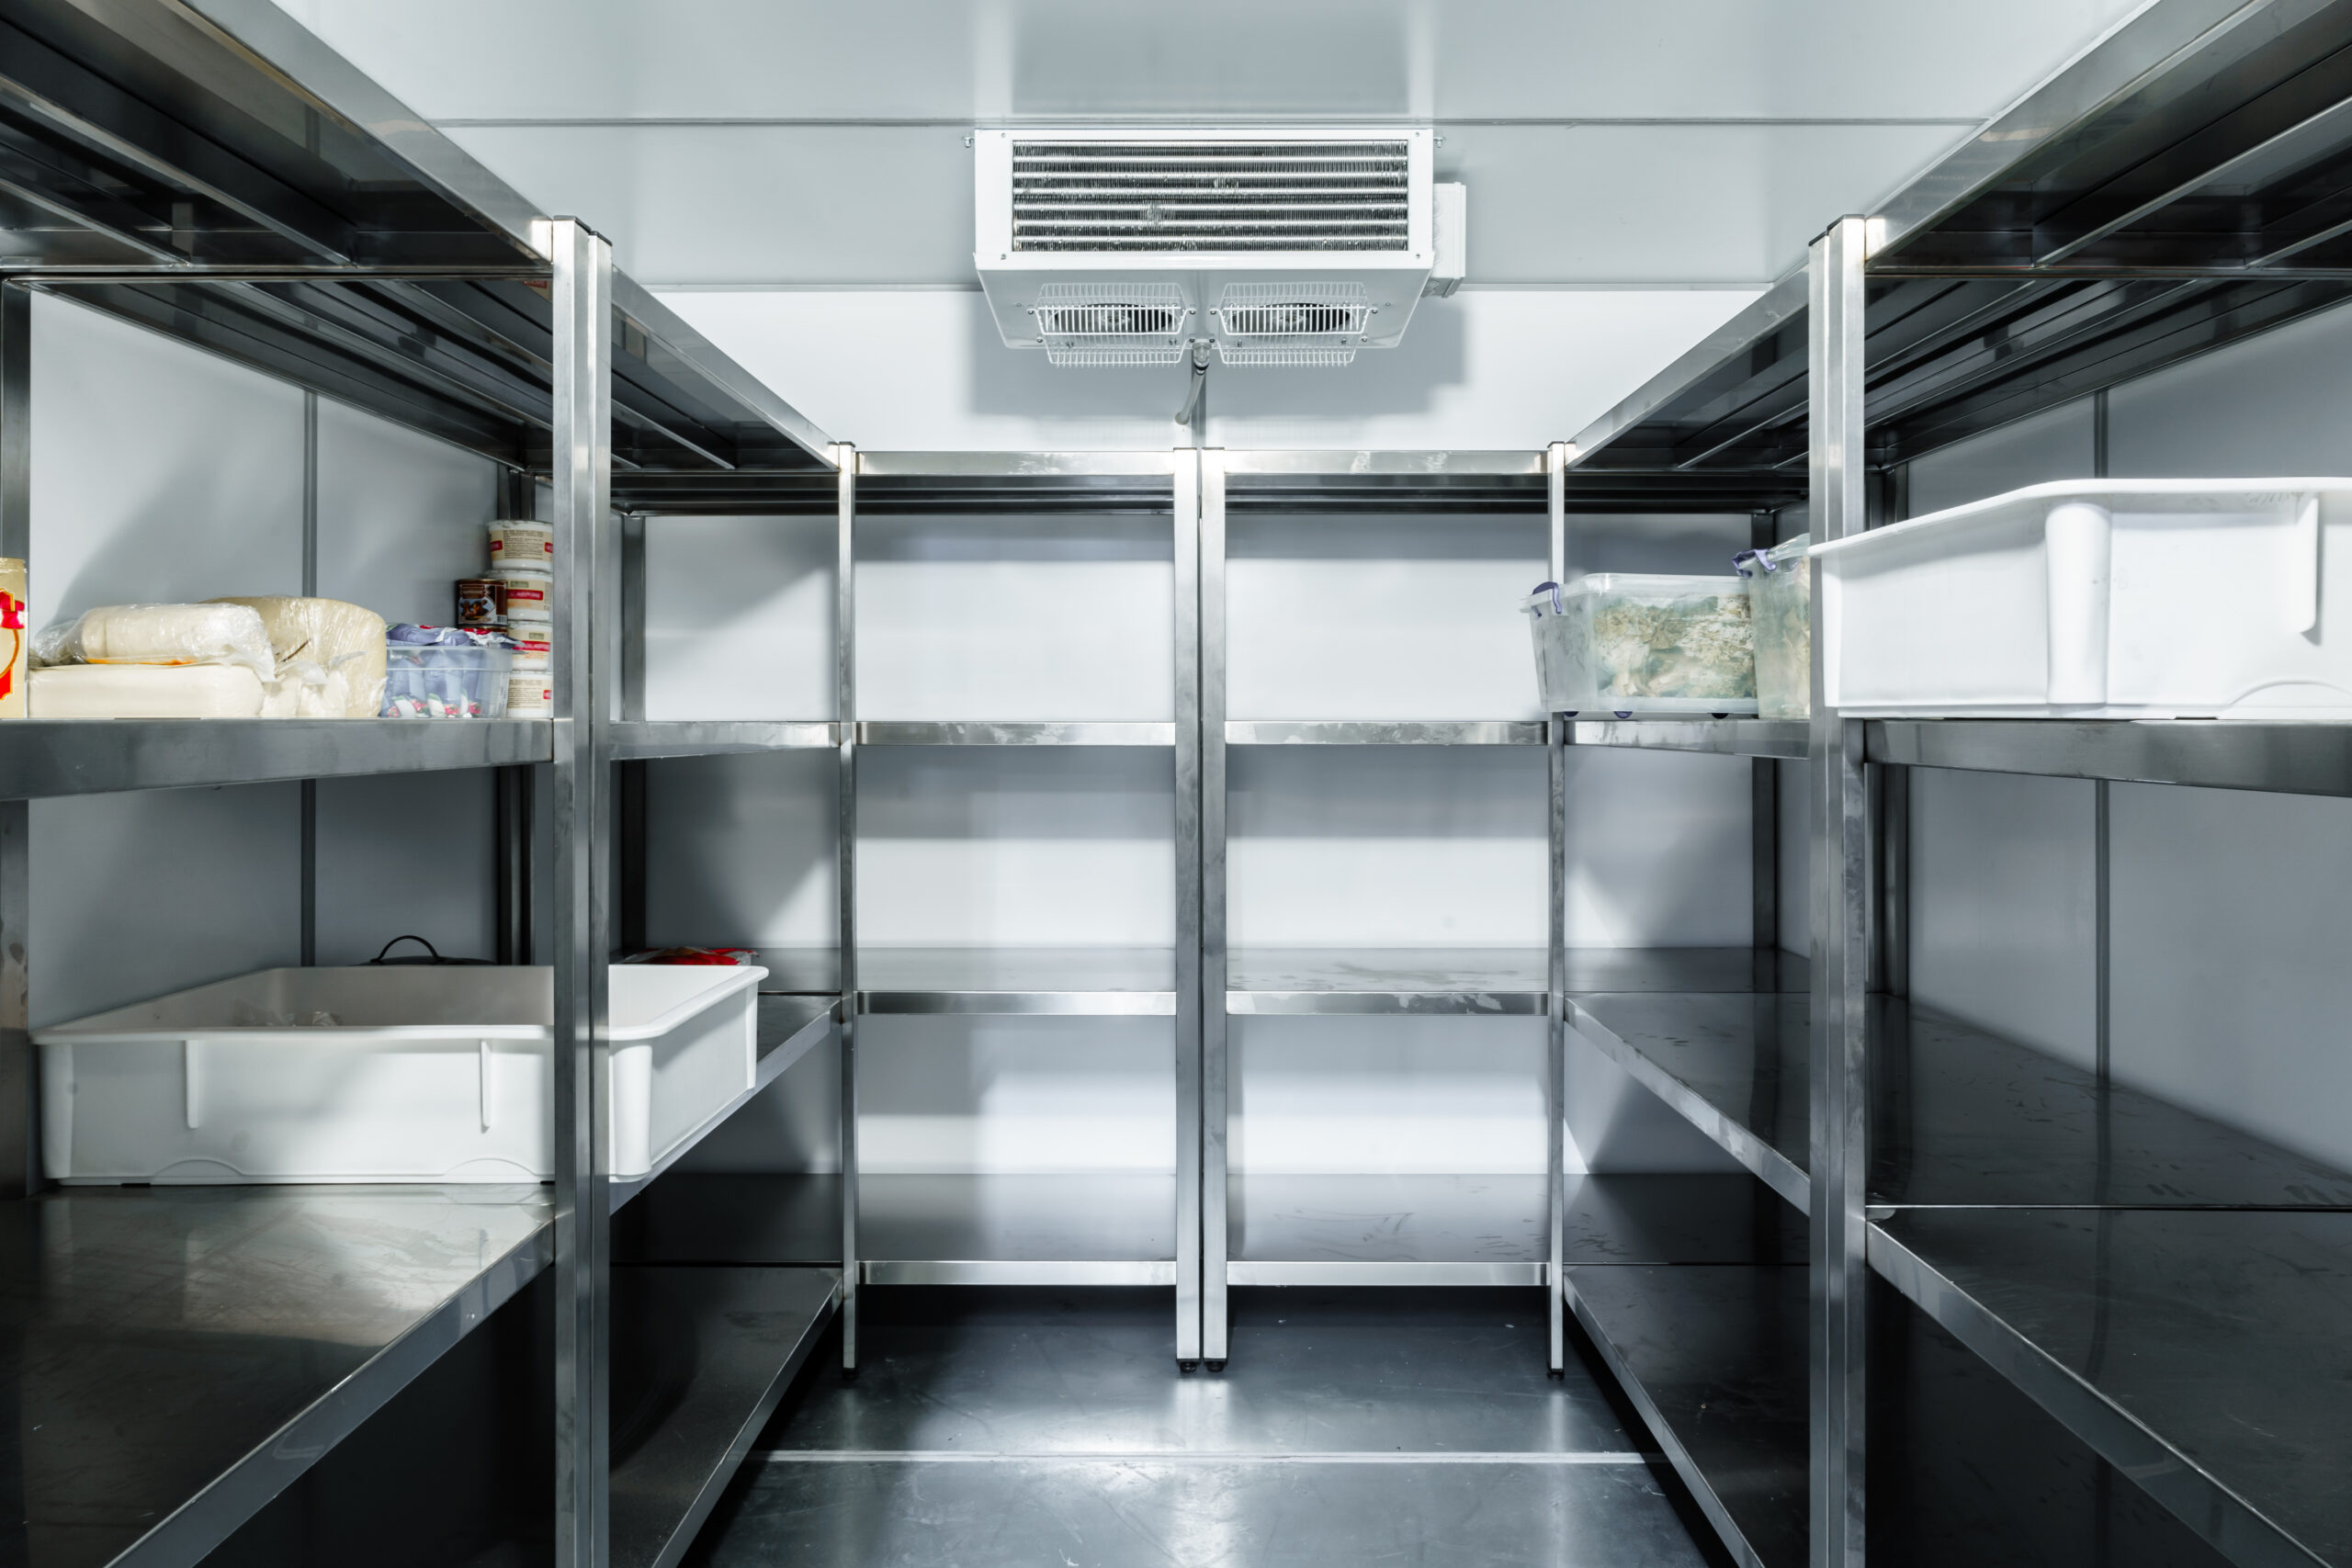 Commercial Refrigeration Installation Services in Wilmington, DE